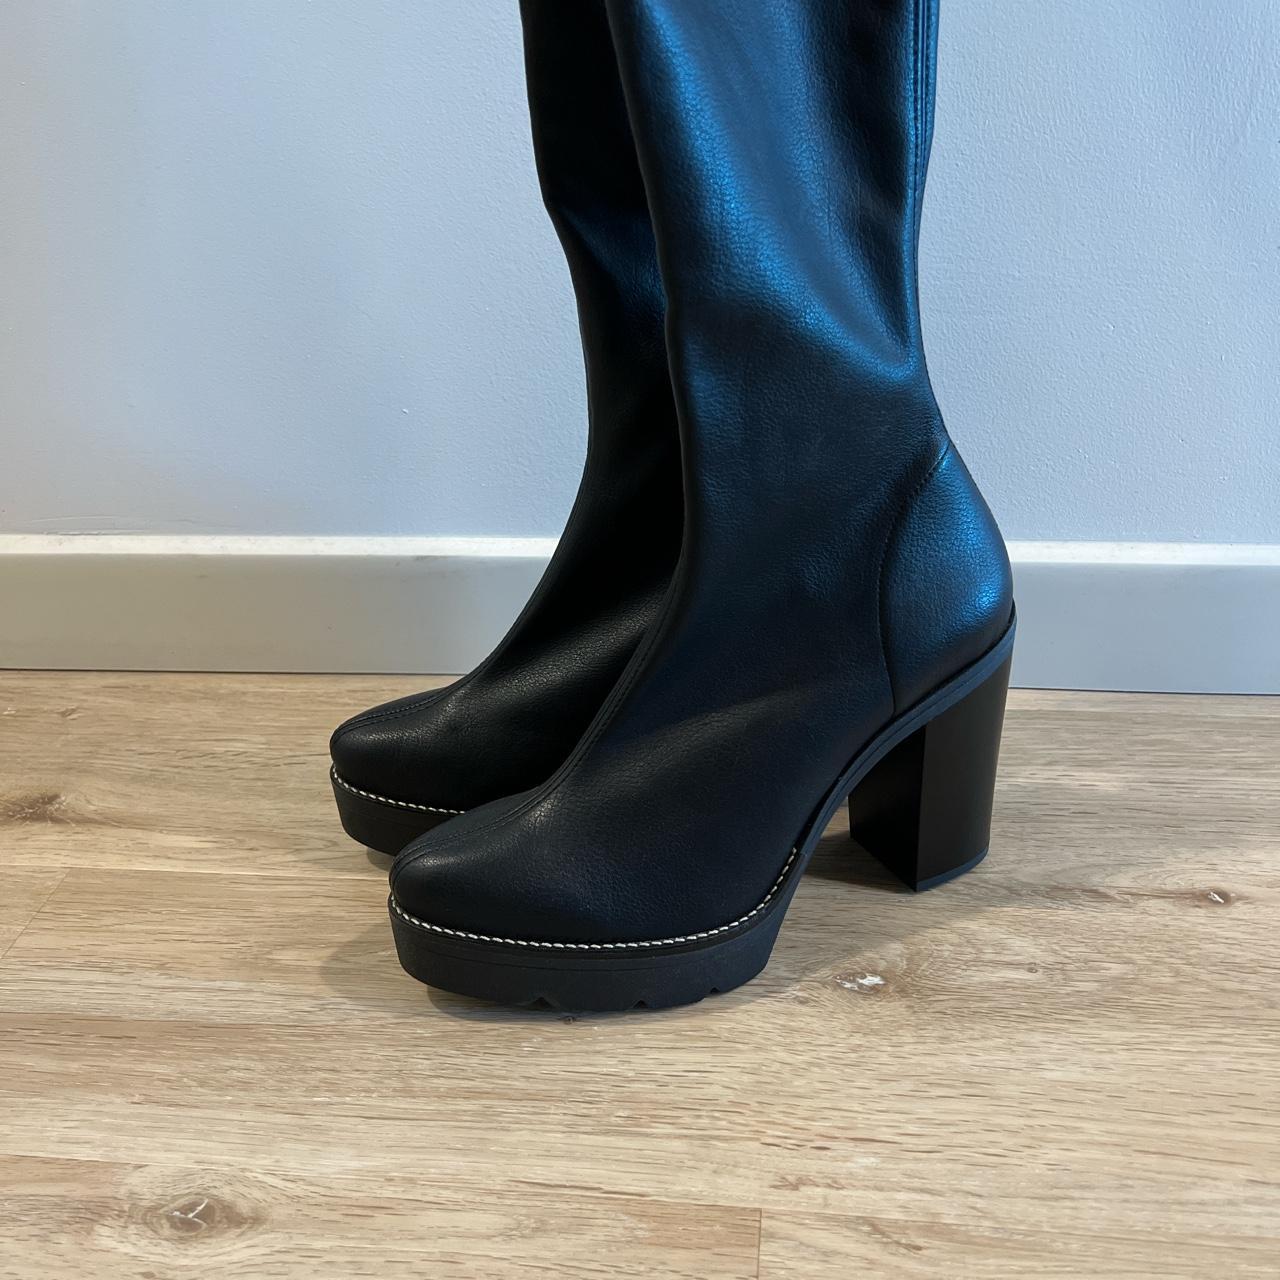 Free People Women's Black Boots | Depop